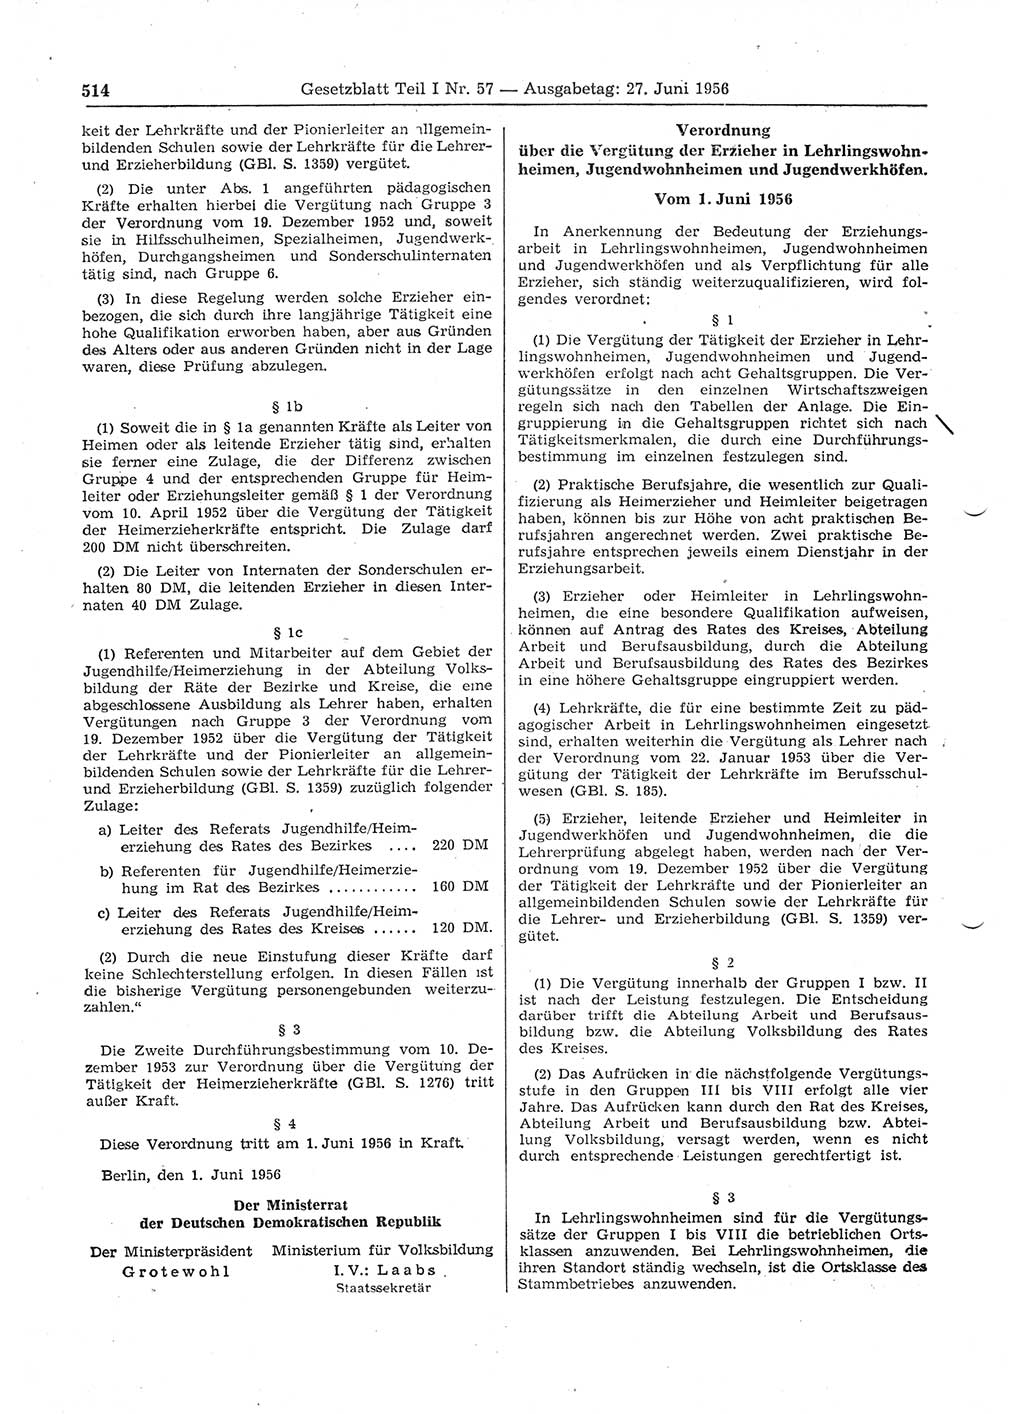 Gesetzblatt (GBl.) der Deutschen Demokratischen Republik (DDR) Teil Ⅰ 1956, Seite 514 (GBl. DDR Ⅰ 1956, S. 514)